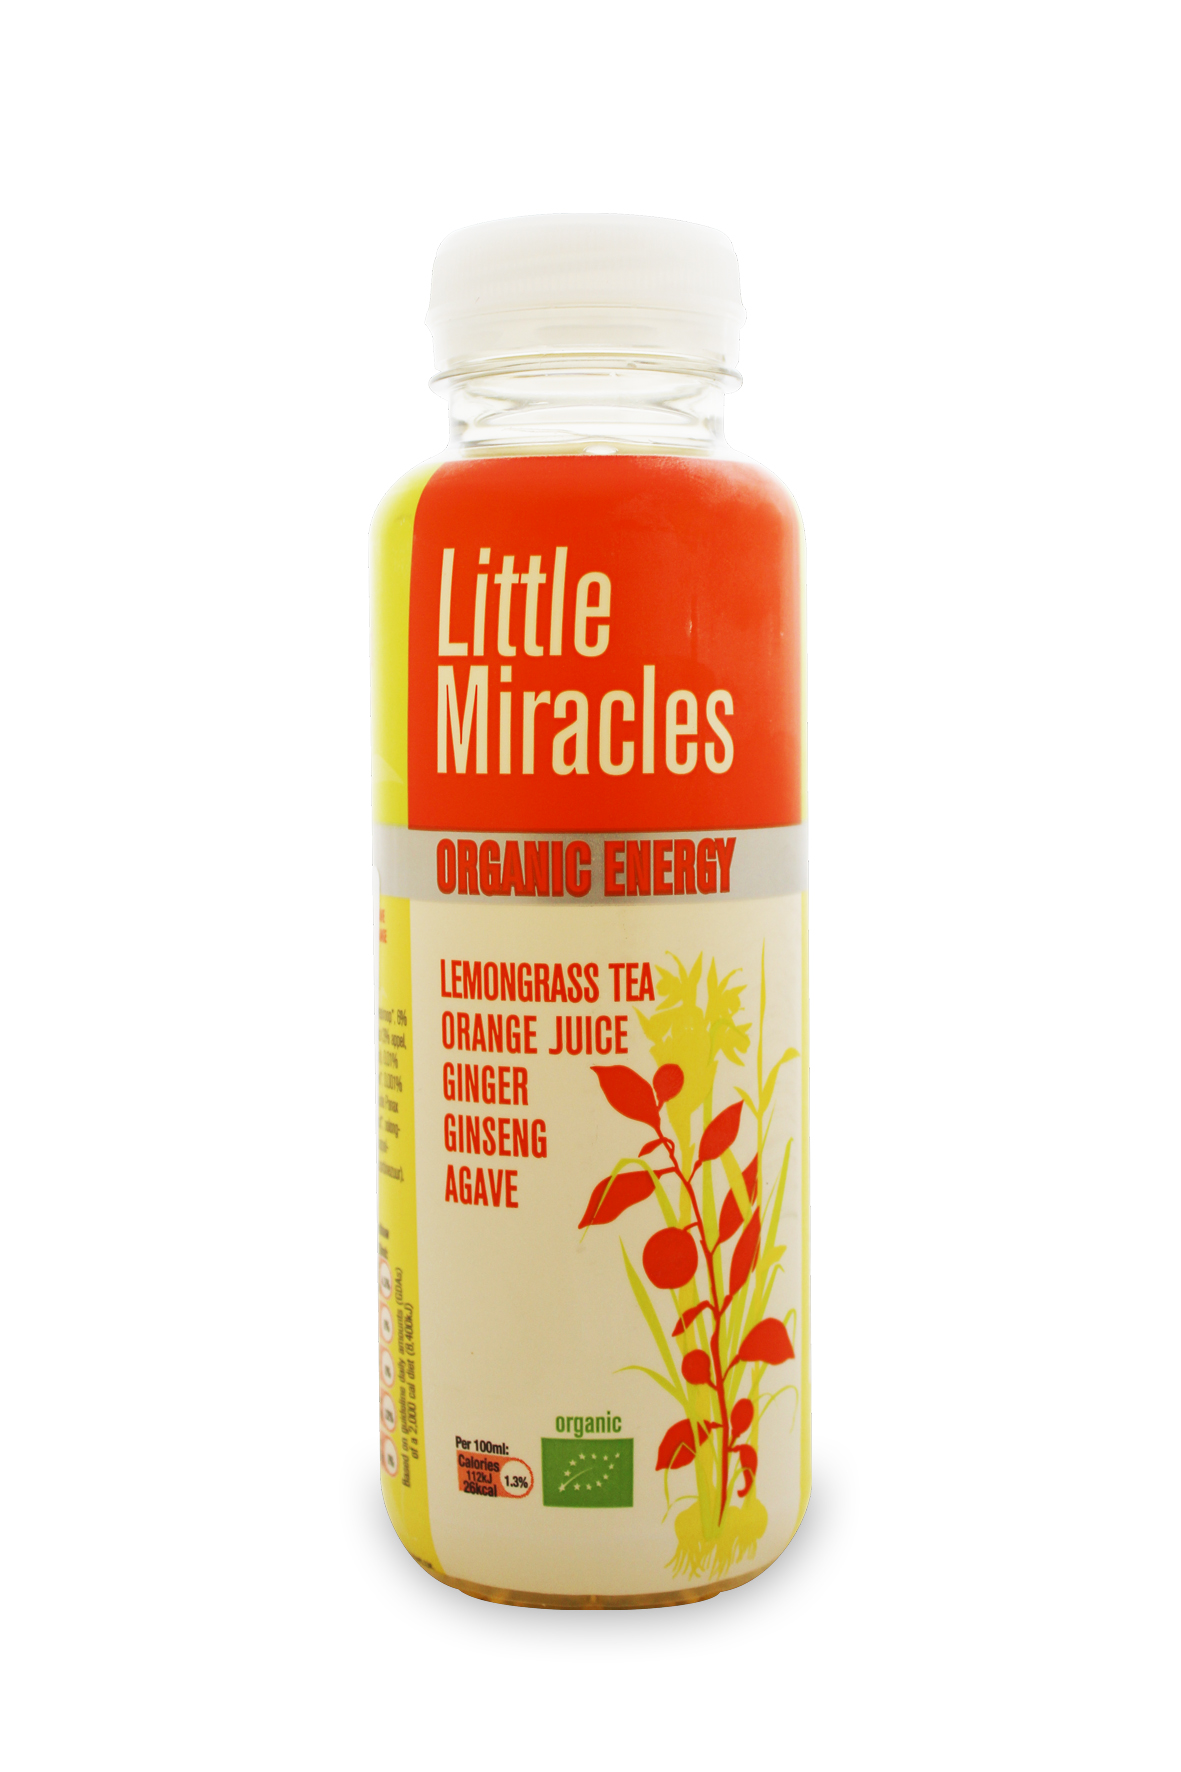 Little Miracles napój energetyczny BIO o smaku trawy cytrynowej, soku pomarańczowego, imbiru, żeńszenia